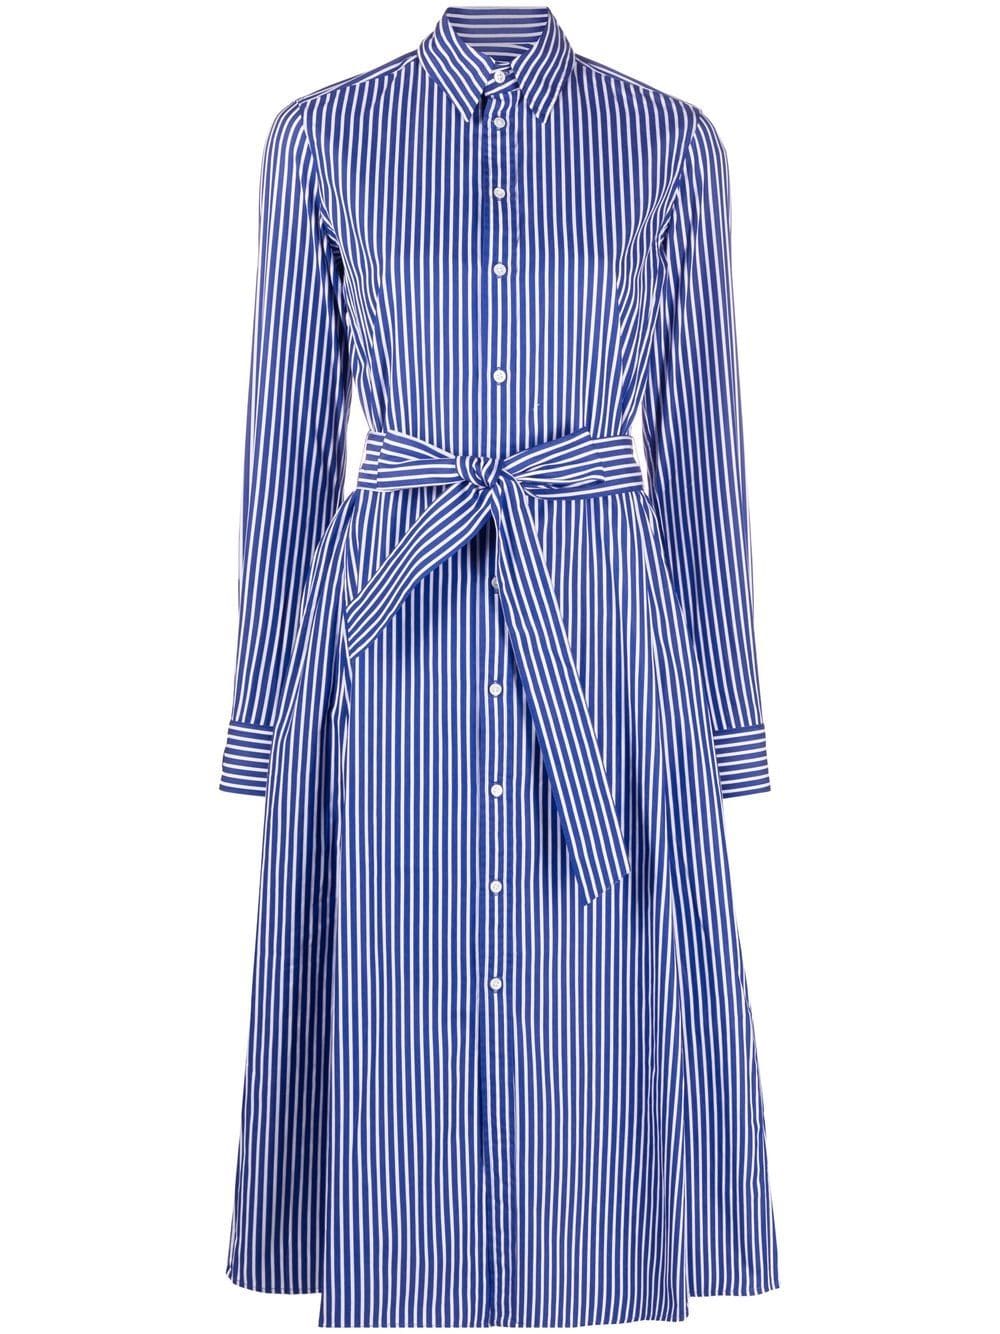 Polo Ralph Lauren striped belted shirt dress - Blue von Polo Ralph Lauren